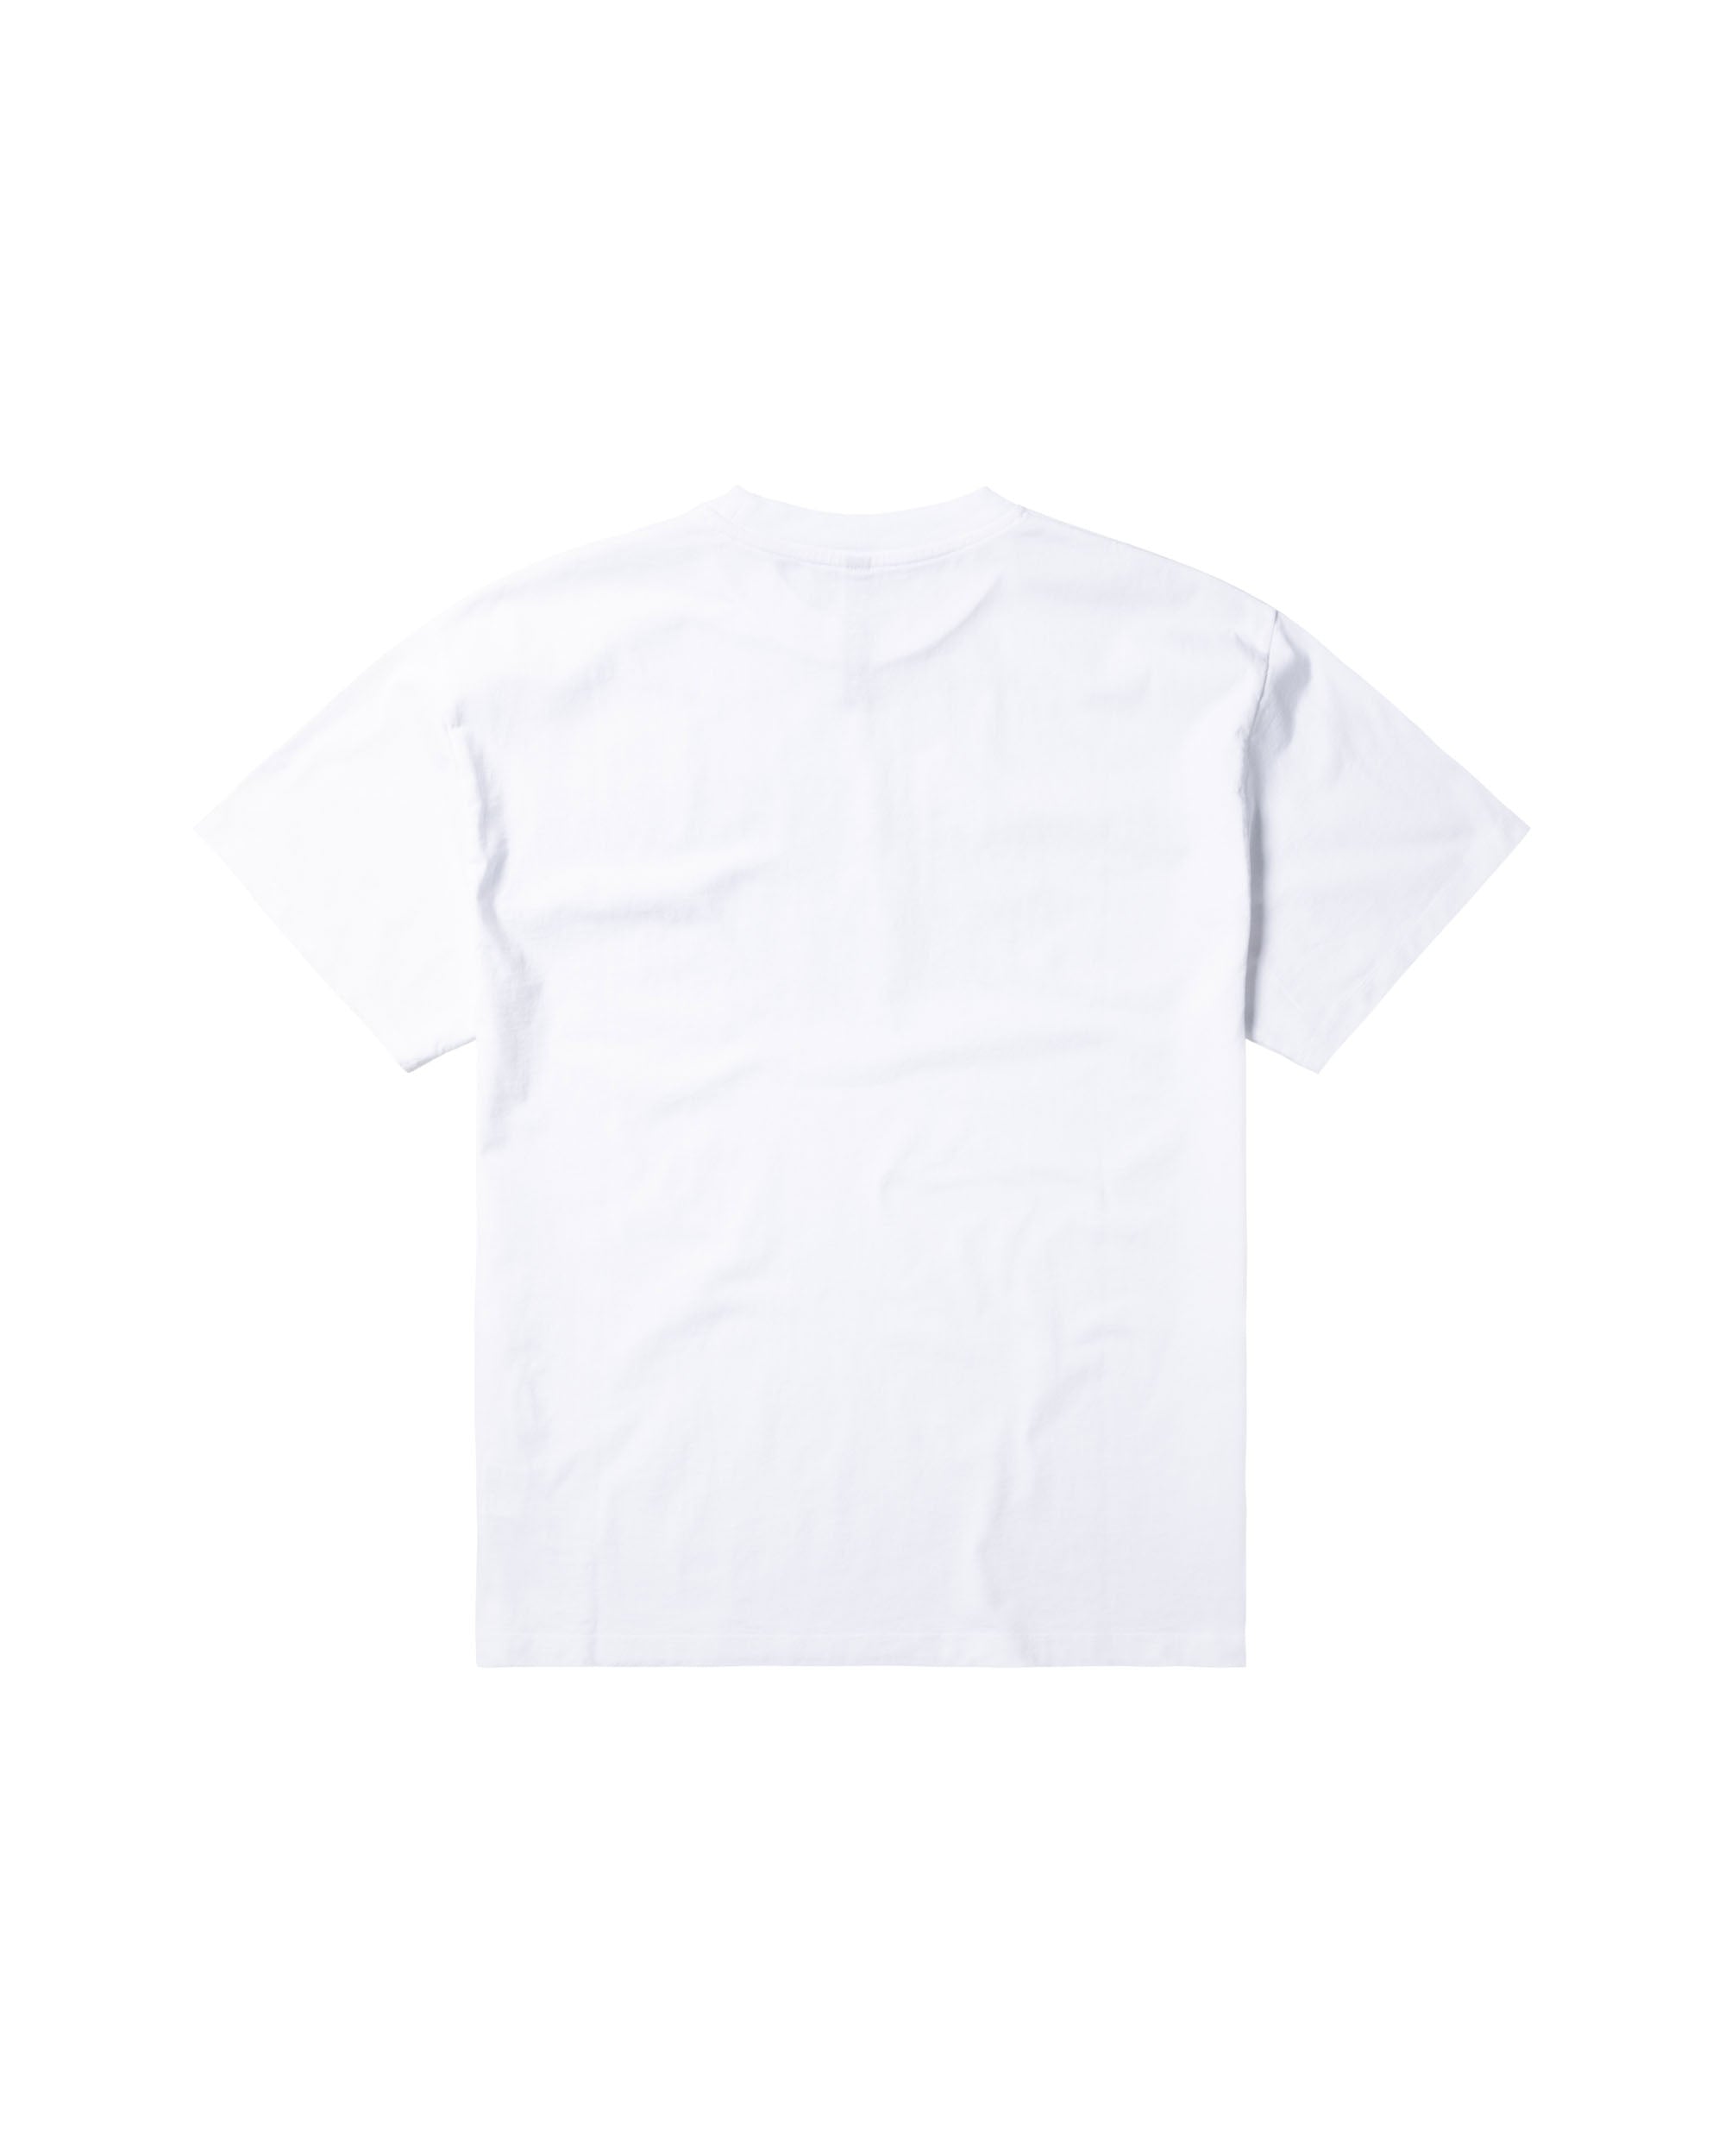 NP Zip T-shirt - White